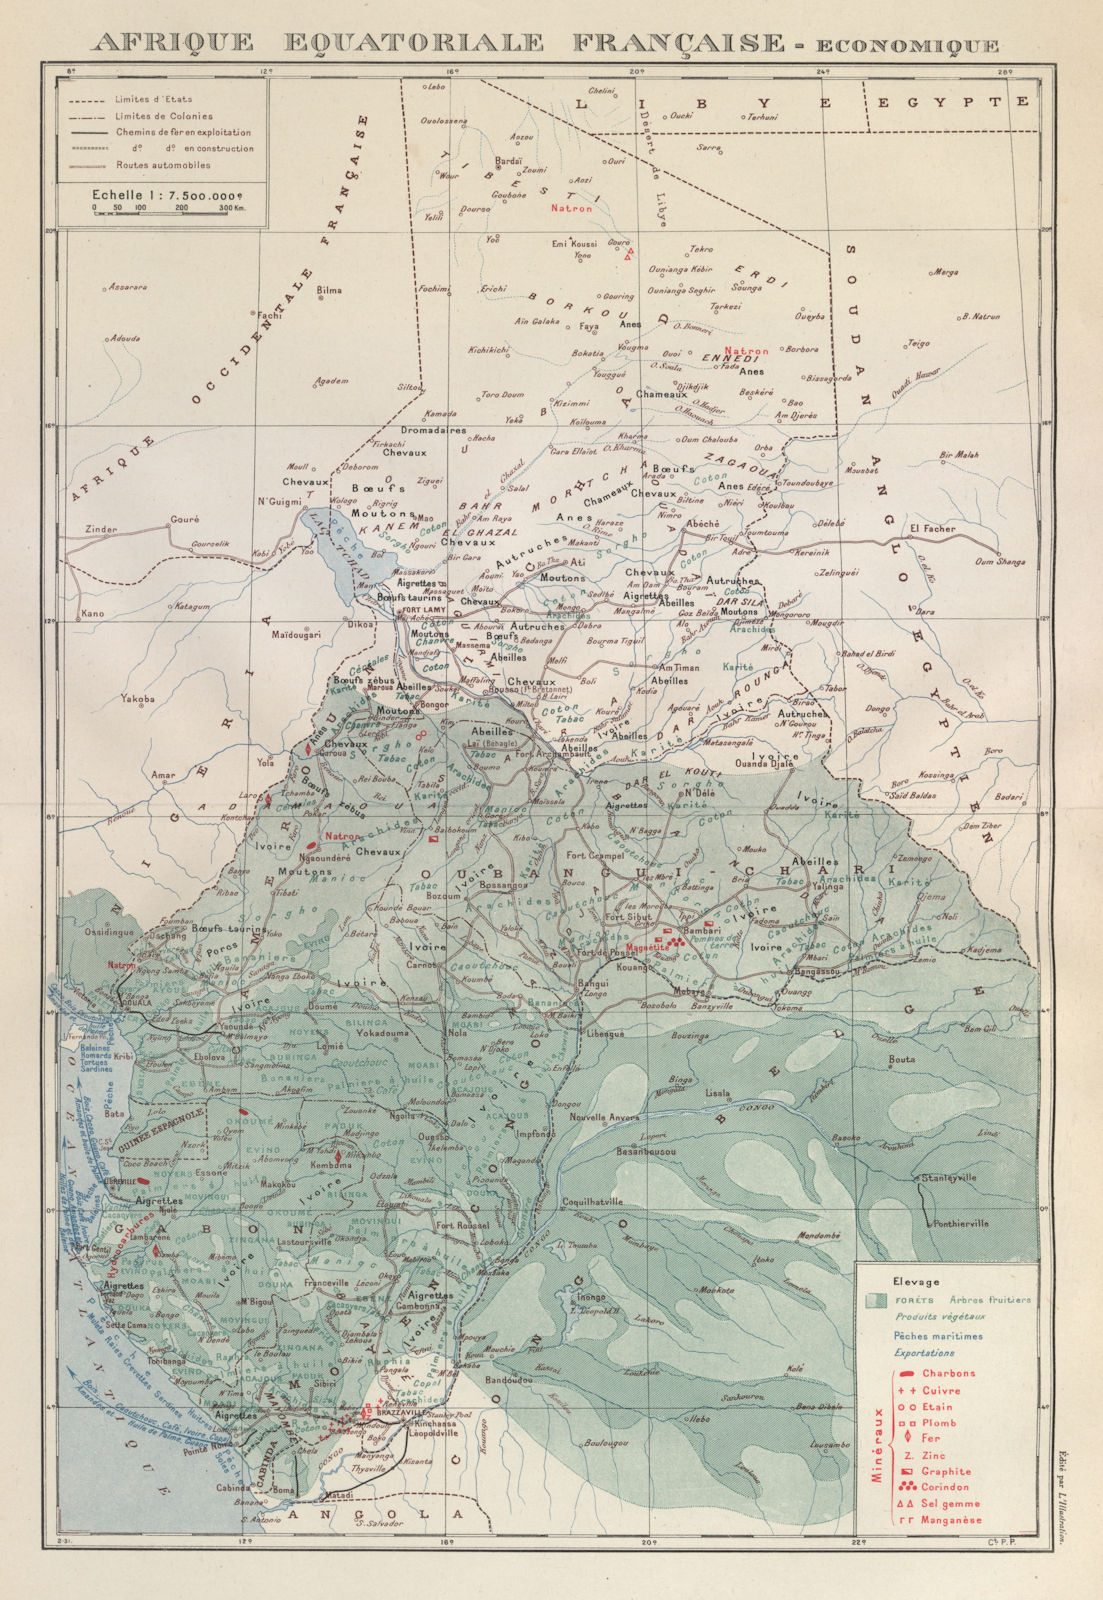 FRENCH EQUATORIAL AFRICA. Afrique équatoriale française. Resources 1931 map